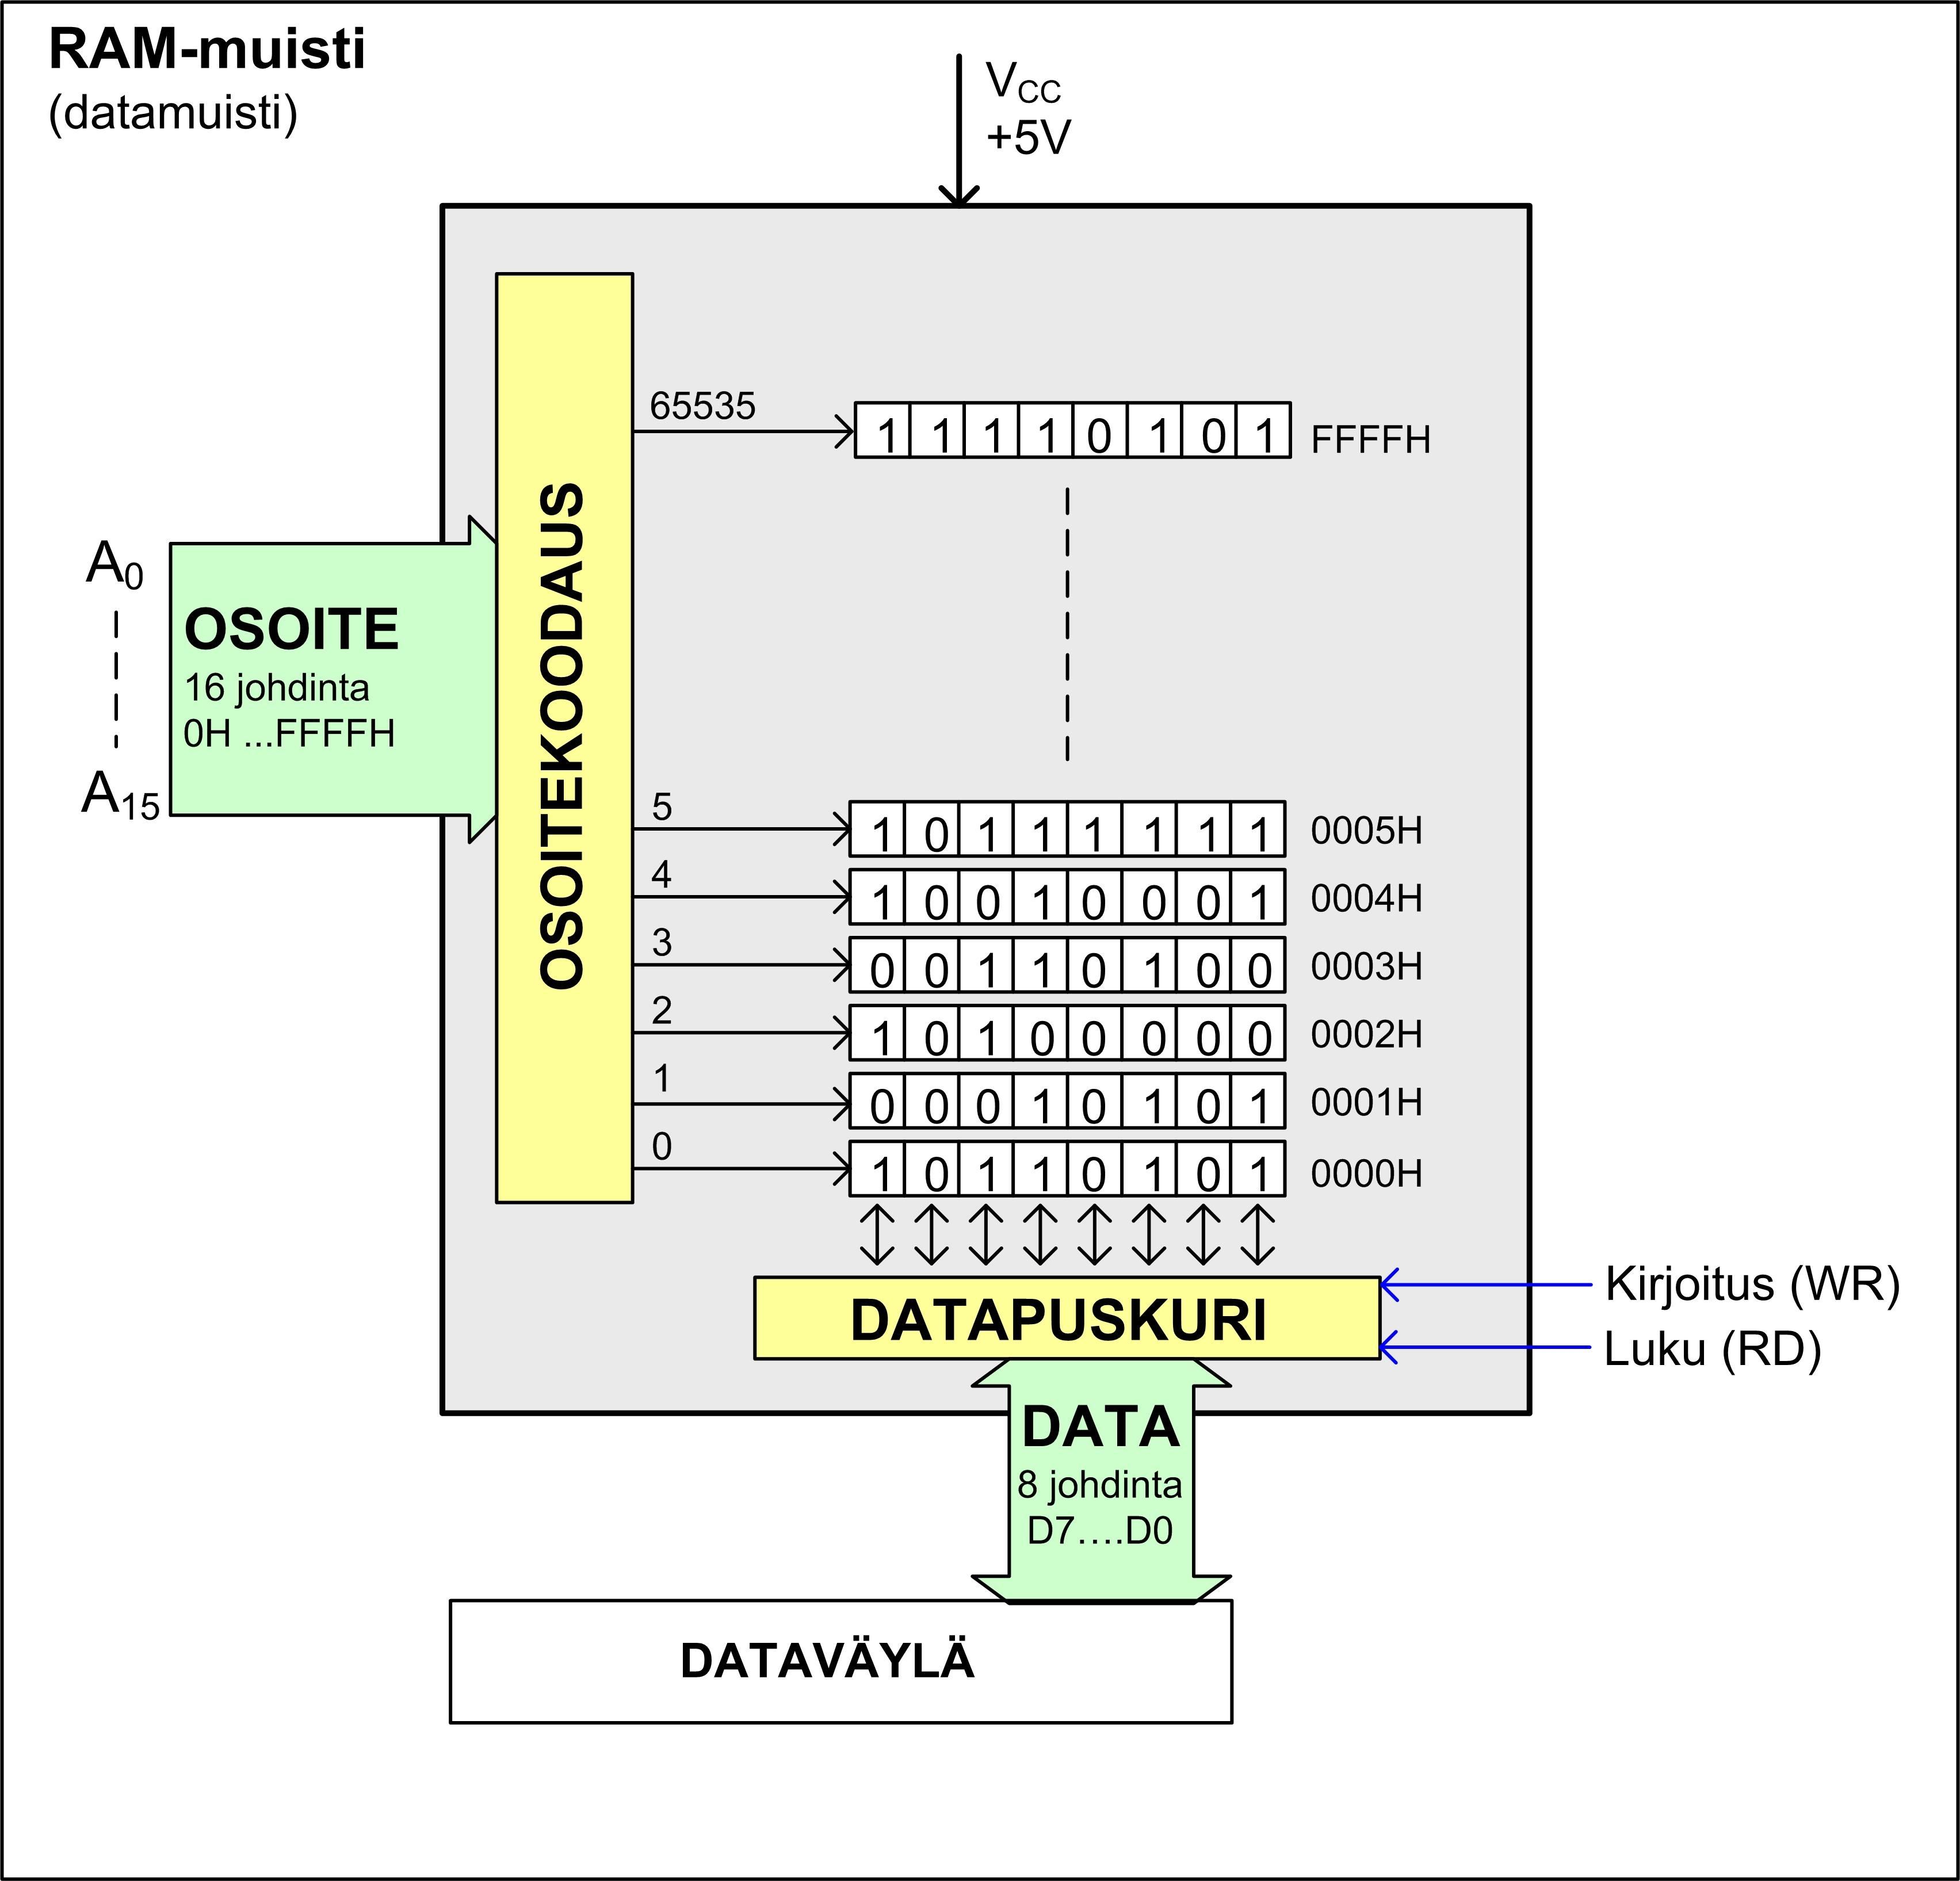 RAM-muistisolu ja muuttuja SRAM-muistisolu on rakennettu transistoreista (kiikku, flip-flop) ja kukin solu voi säilöä yhden bitin, ykkösen tai nollan.